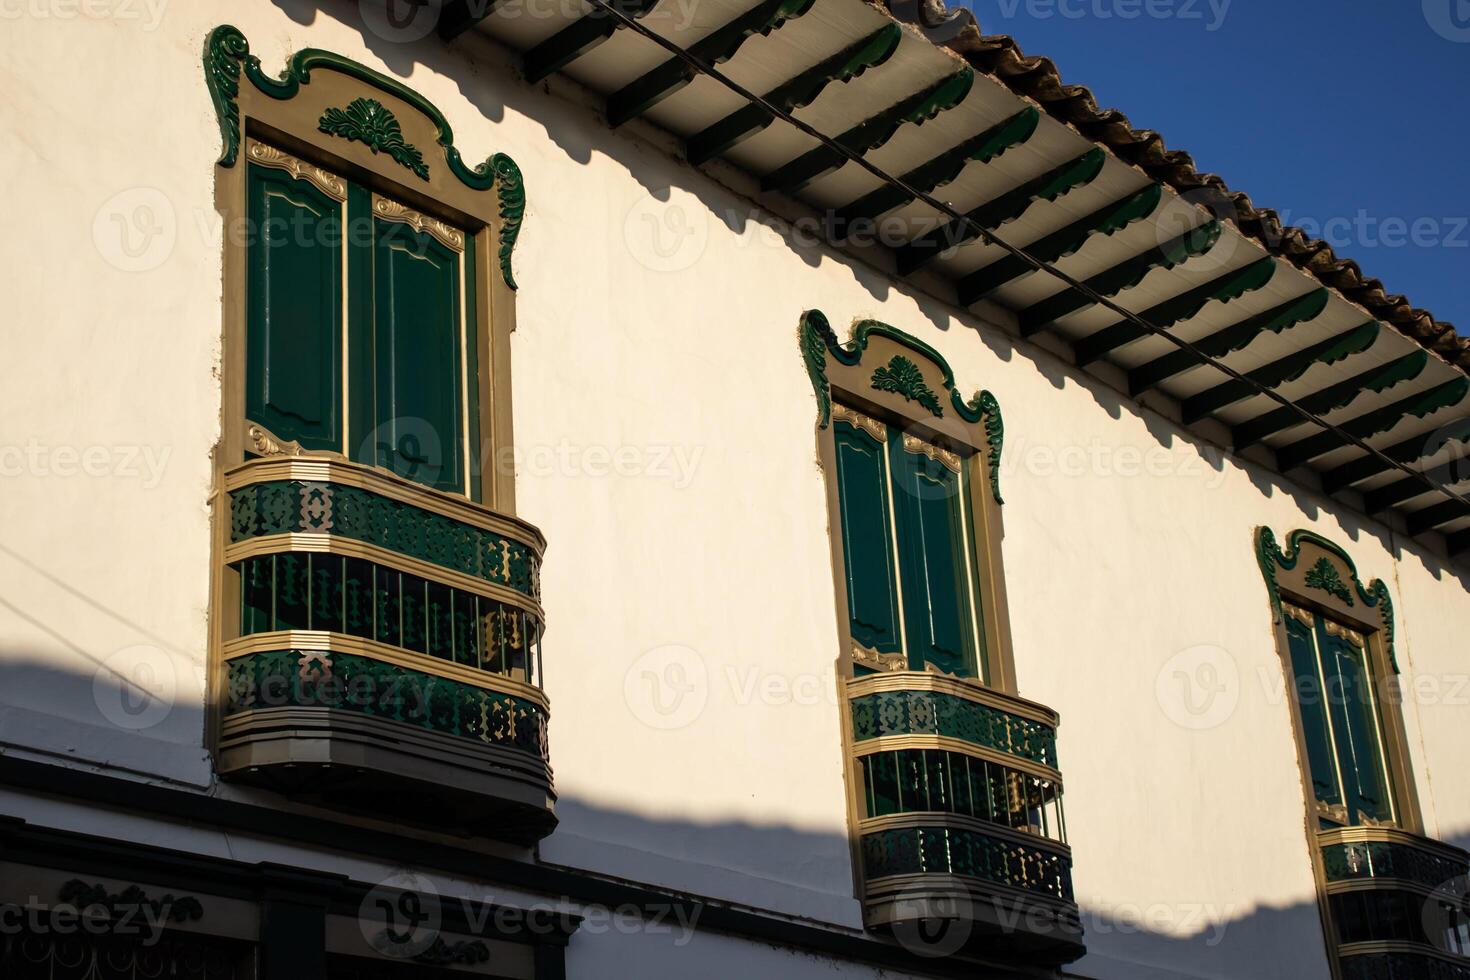 magnifique façade de le Maisons à le historique centre ville de le patrimoine ville de salamine situé à le caldas département dans Colombie. photo